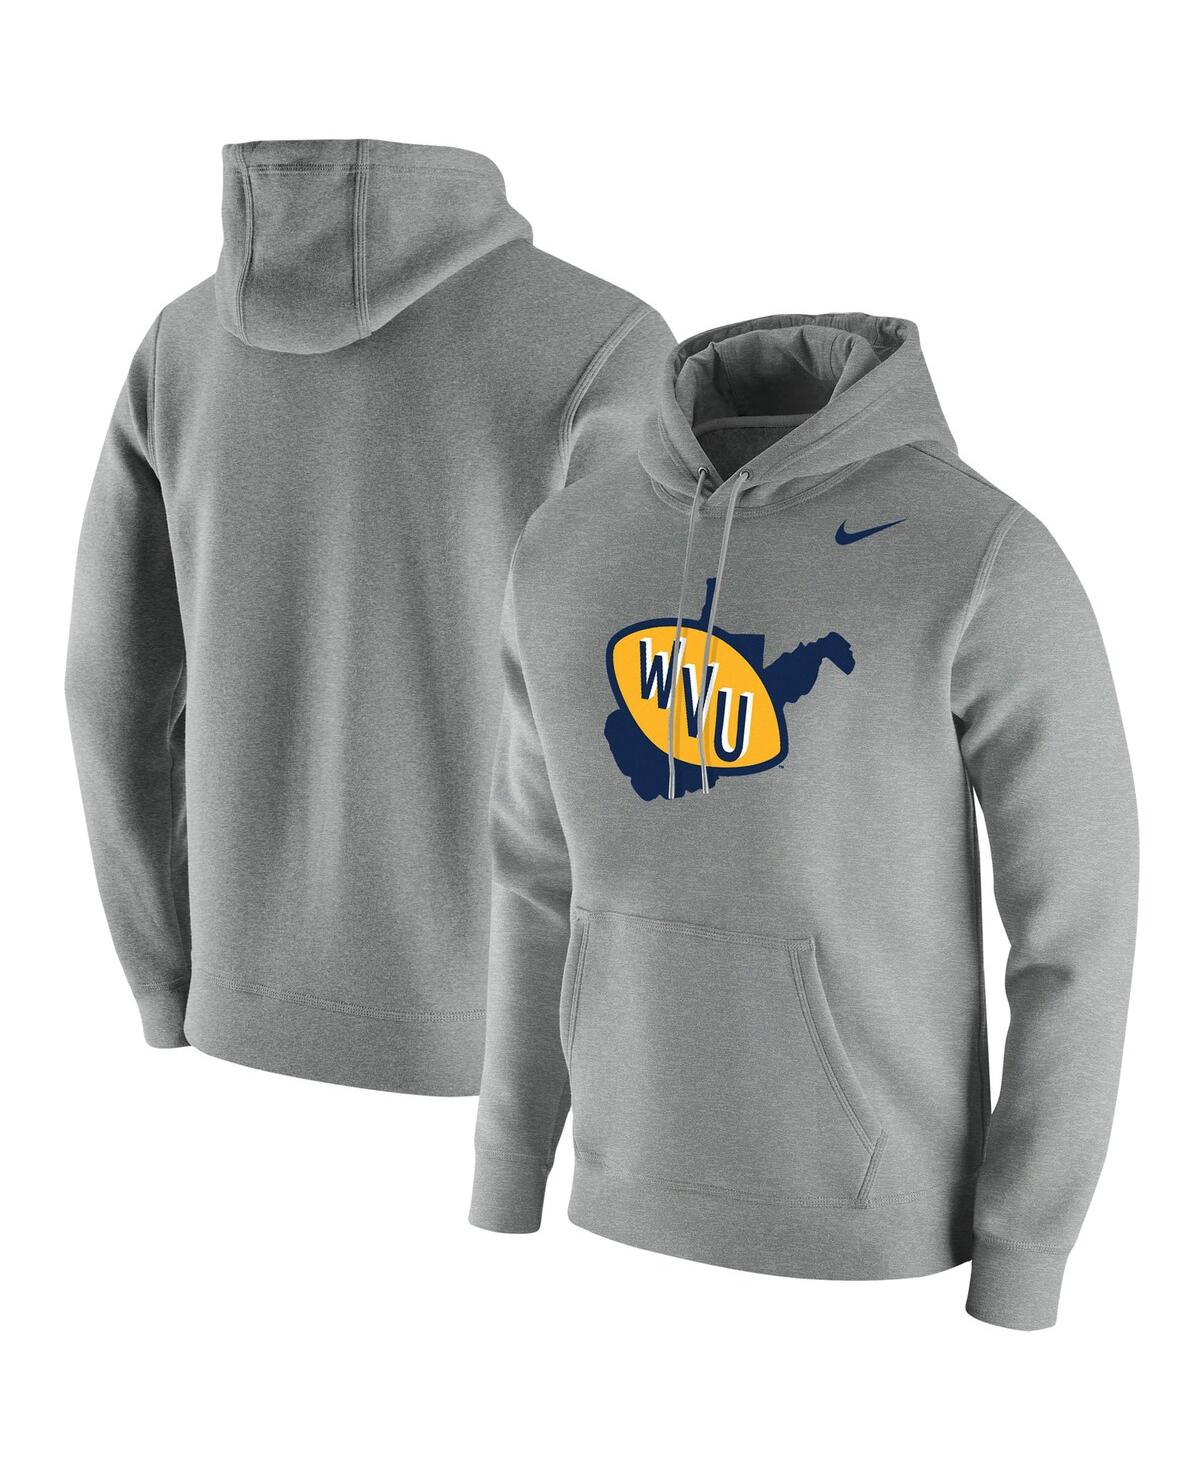 Shop Nike Men's  Heathered Gray West Virginia Mountaineers Vintage-like School Logo Pullover Hoodie